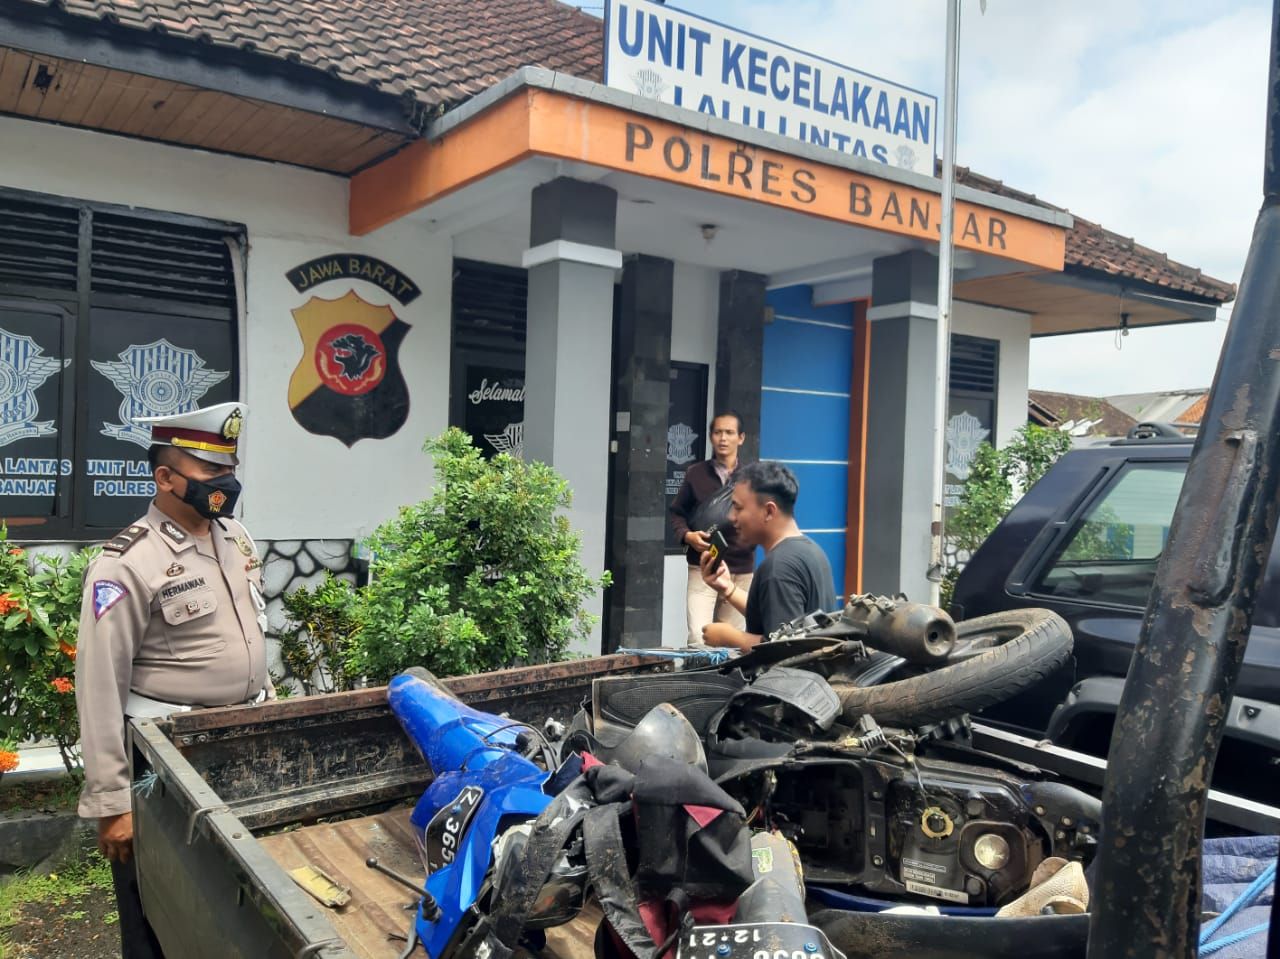 Plh KanitMotor korban hingga menewaskan pengendaranya diamankan di Unit Laka Polres Banjar, Jumat, 8 Oktober 2021.*